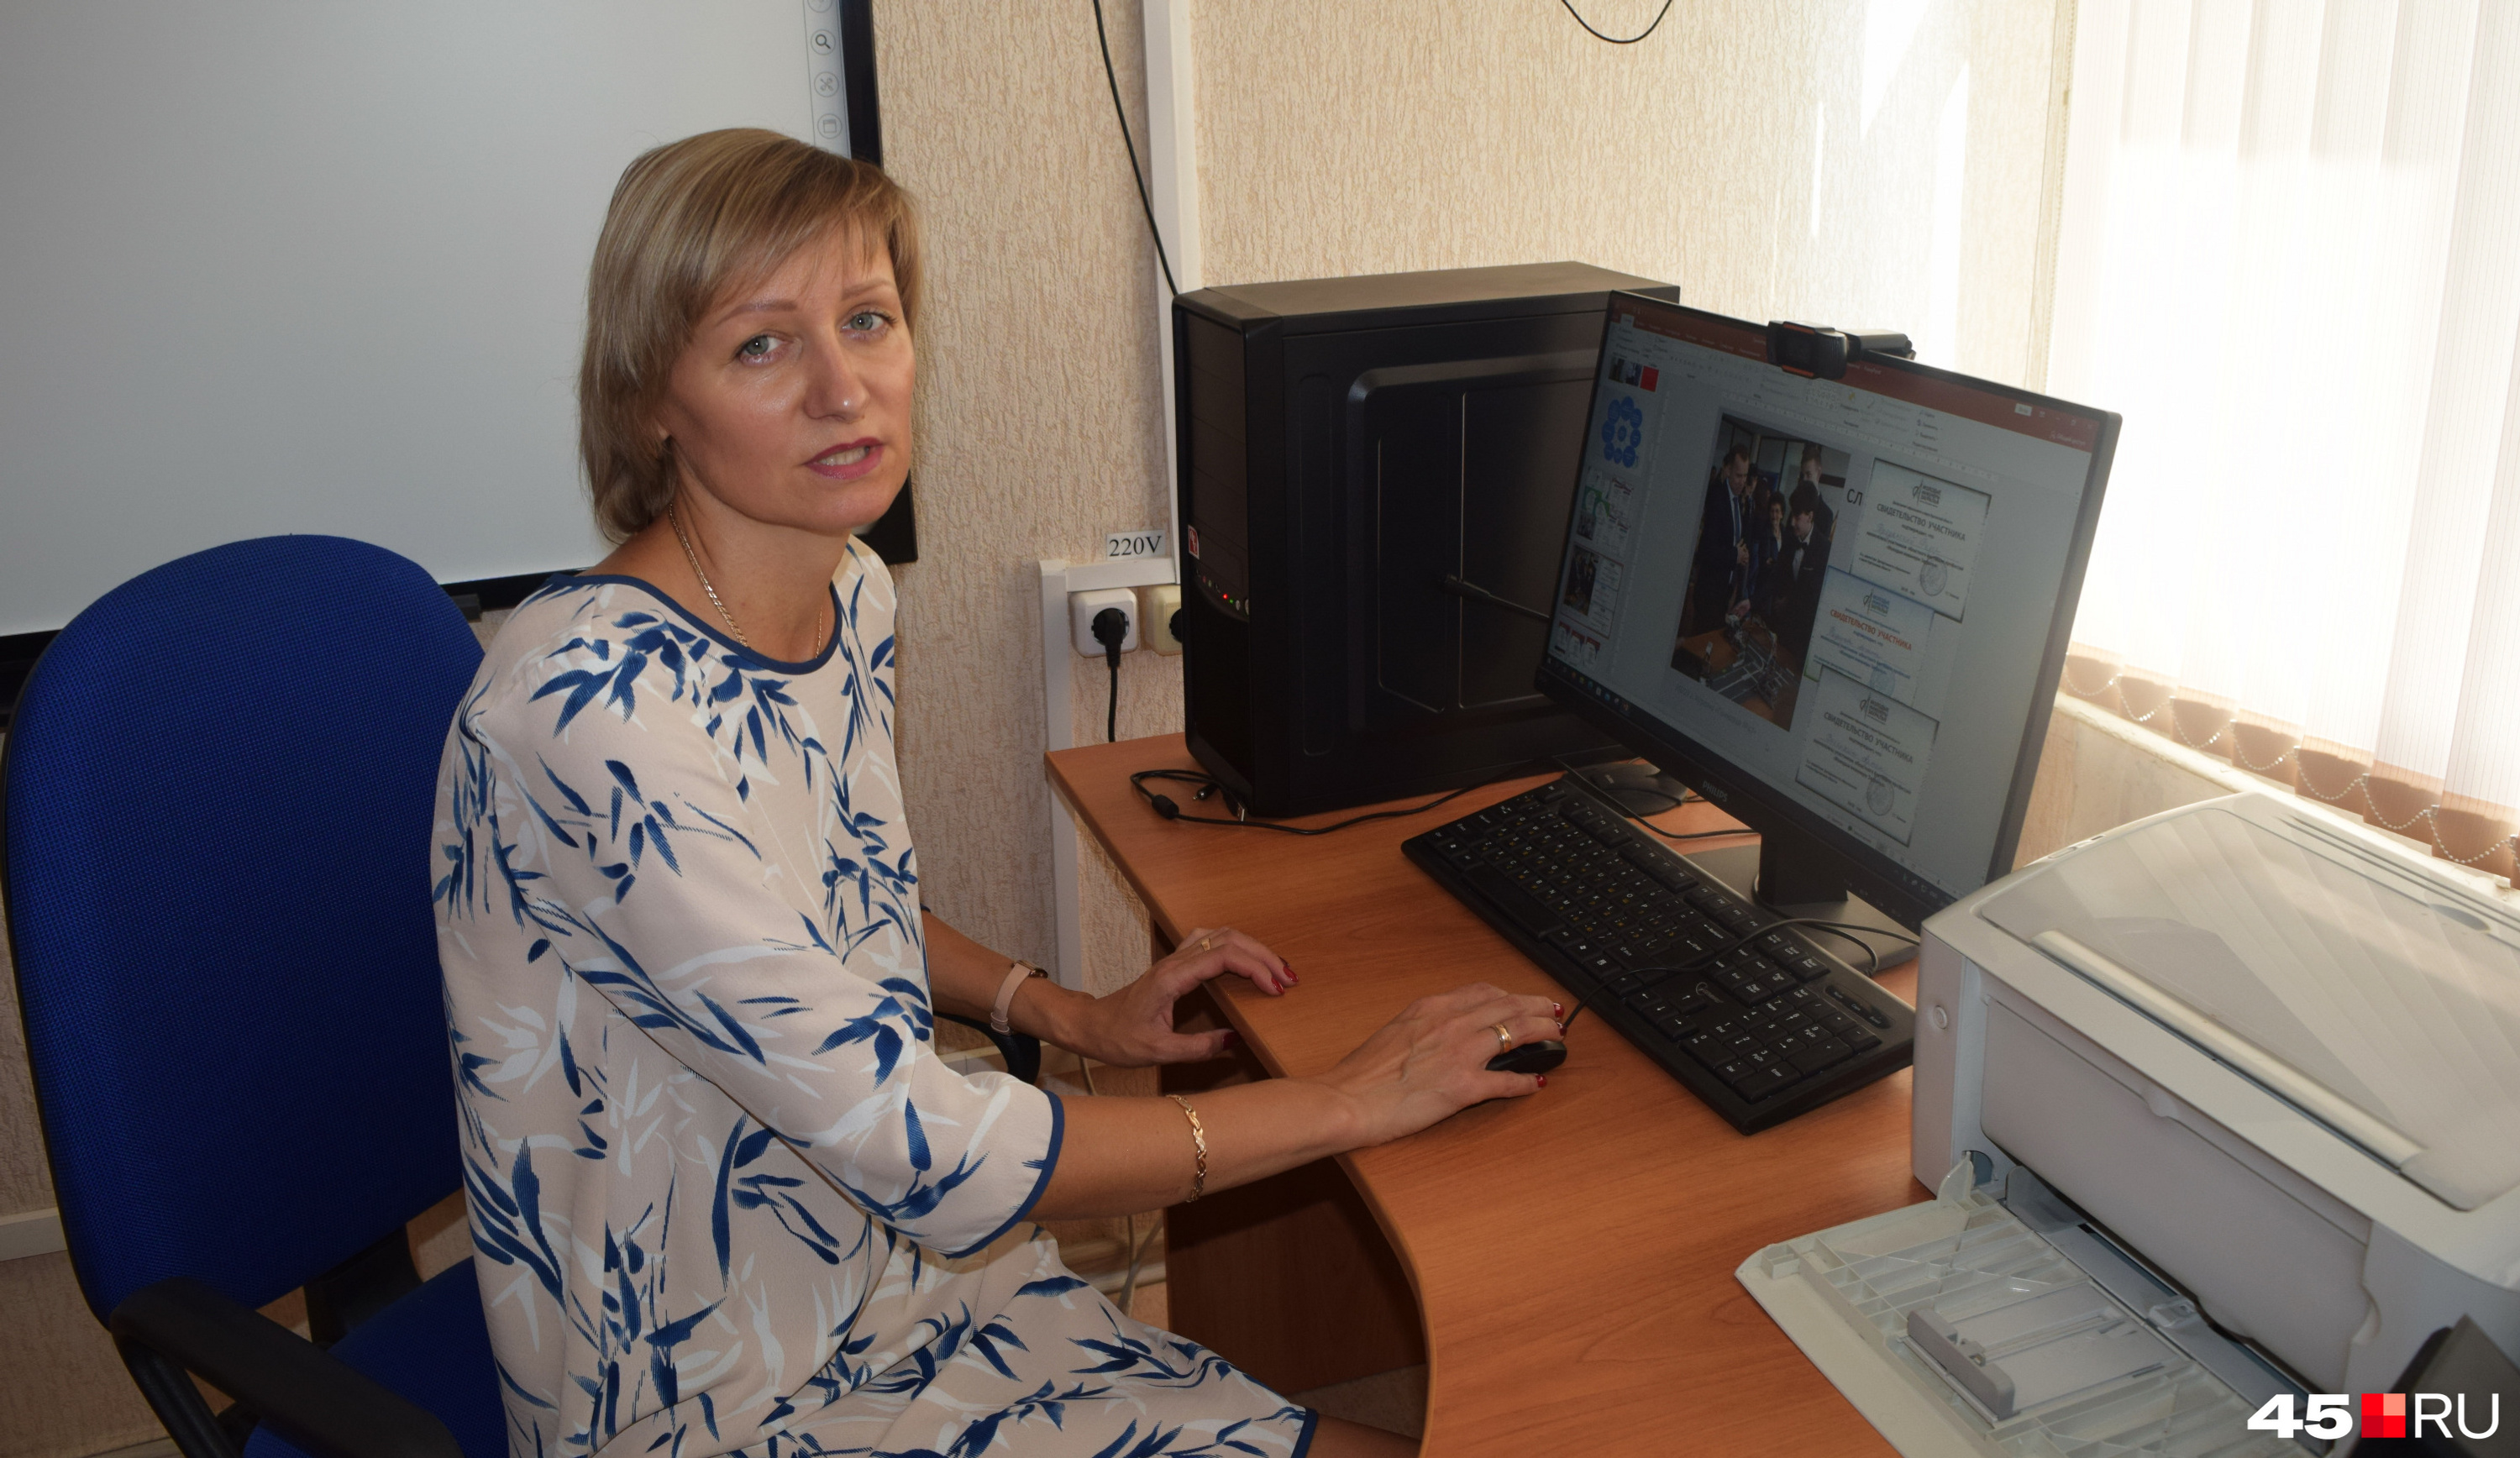 Татьяна Корюкина работает в школе с 1999 года